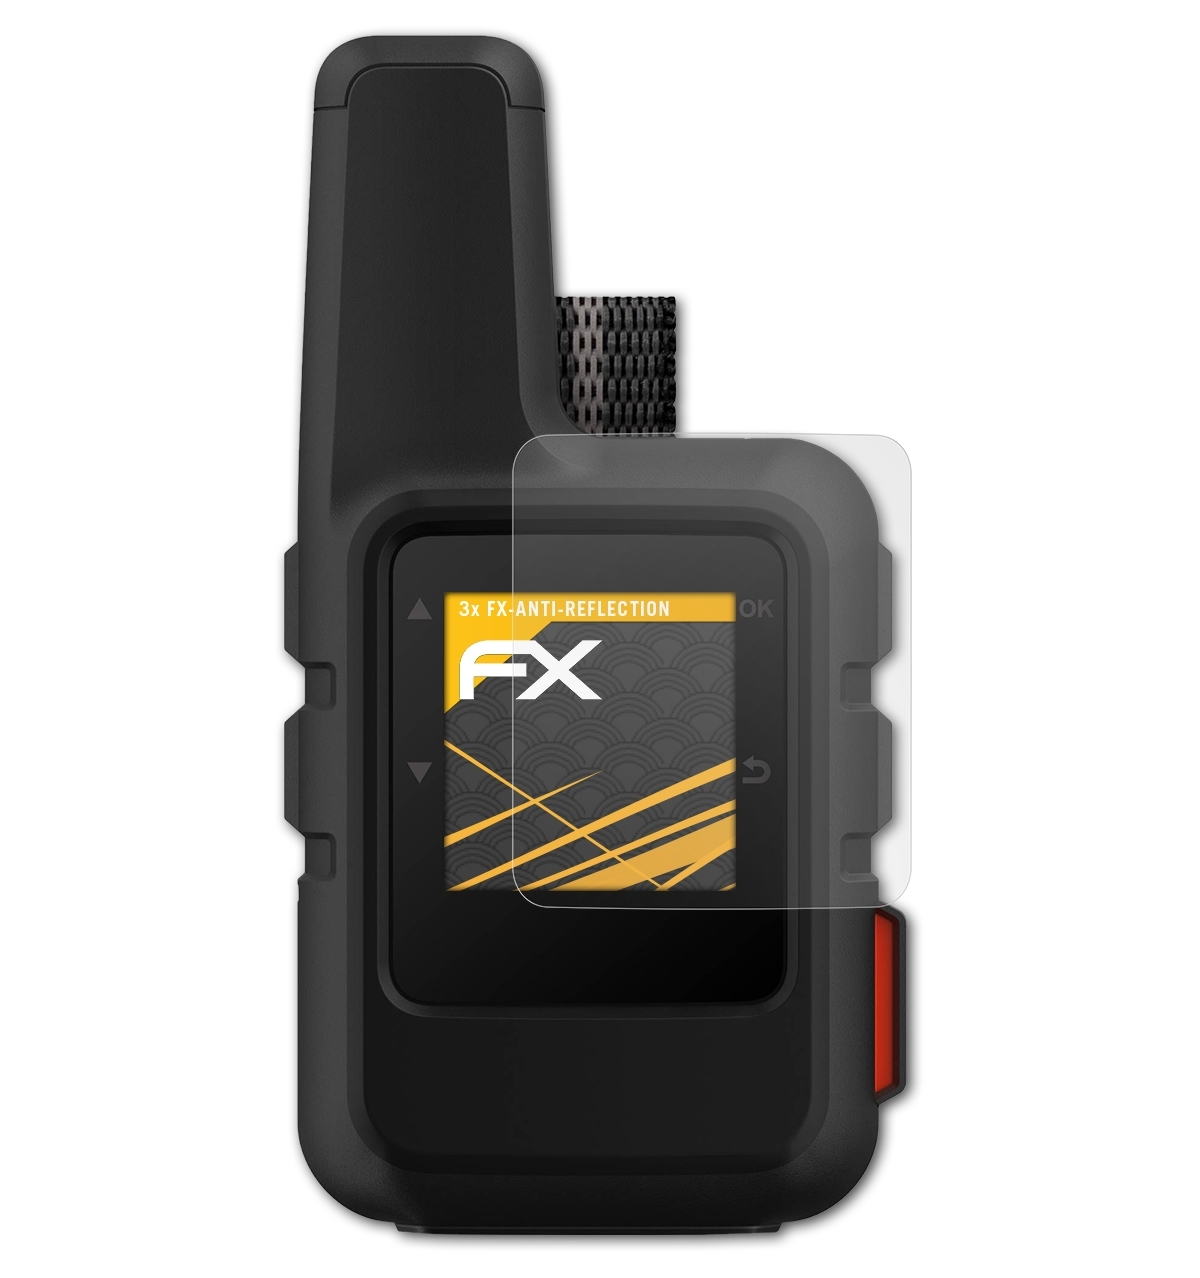 ATFOLIX inReach Mini) Garmin FX-Antireflex Displayschutz(für 3x